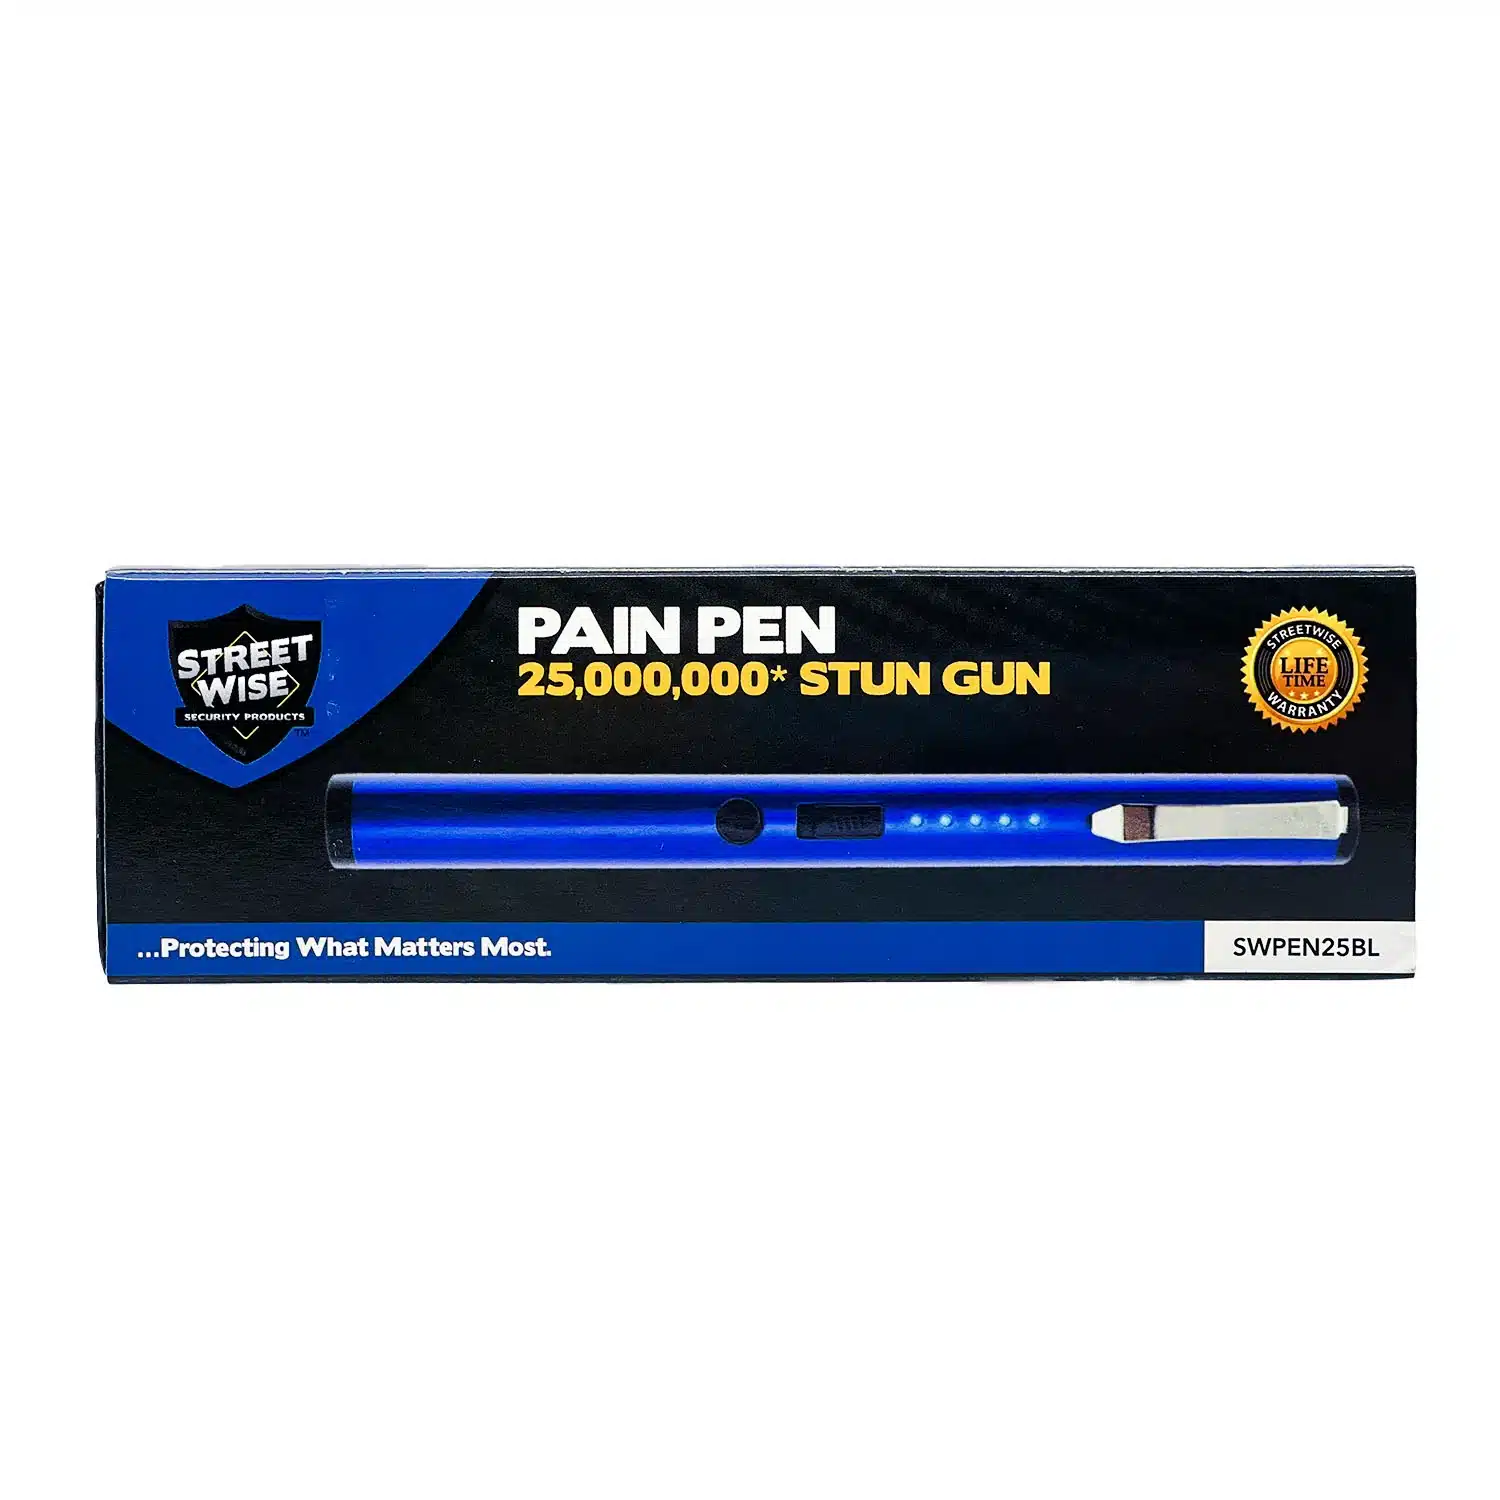 Pain Pen Box